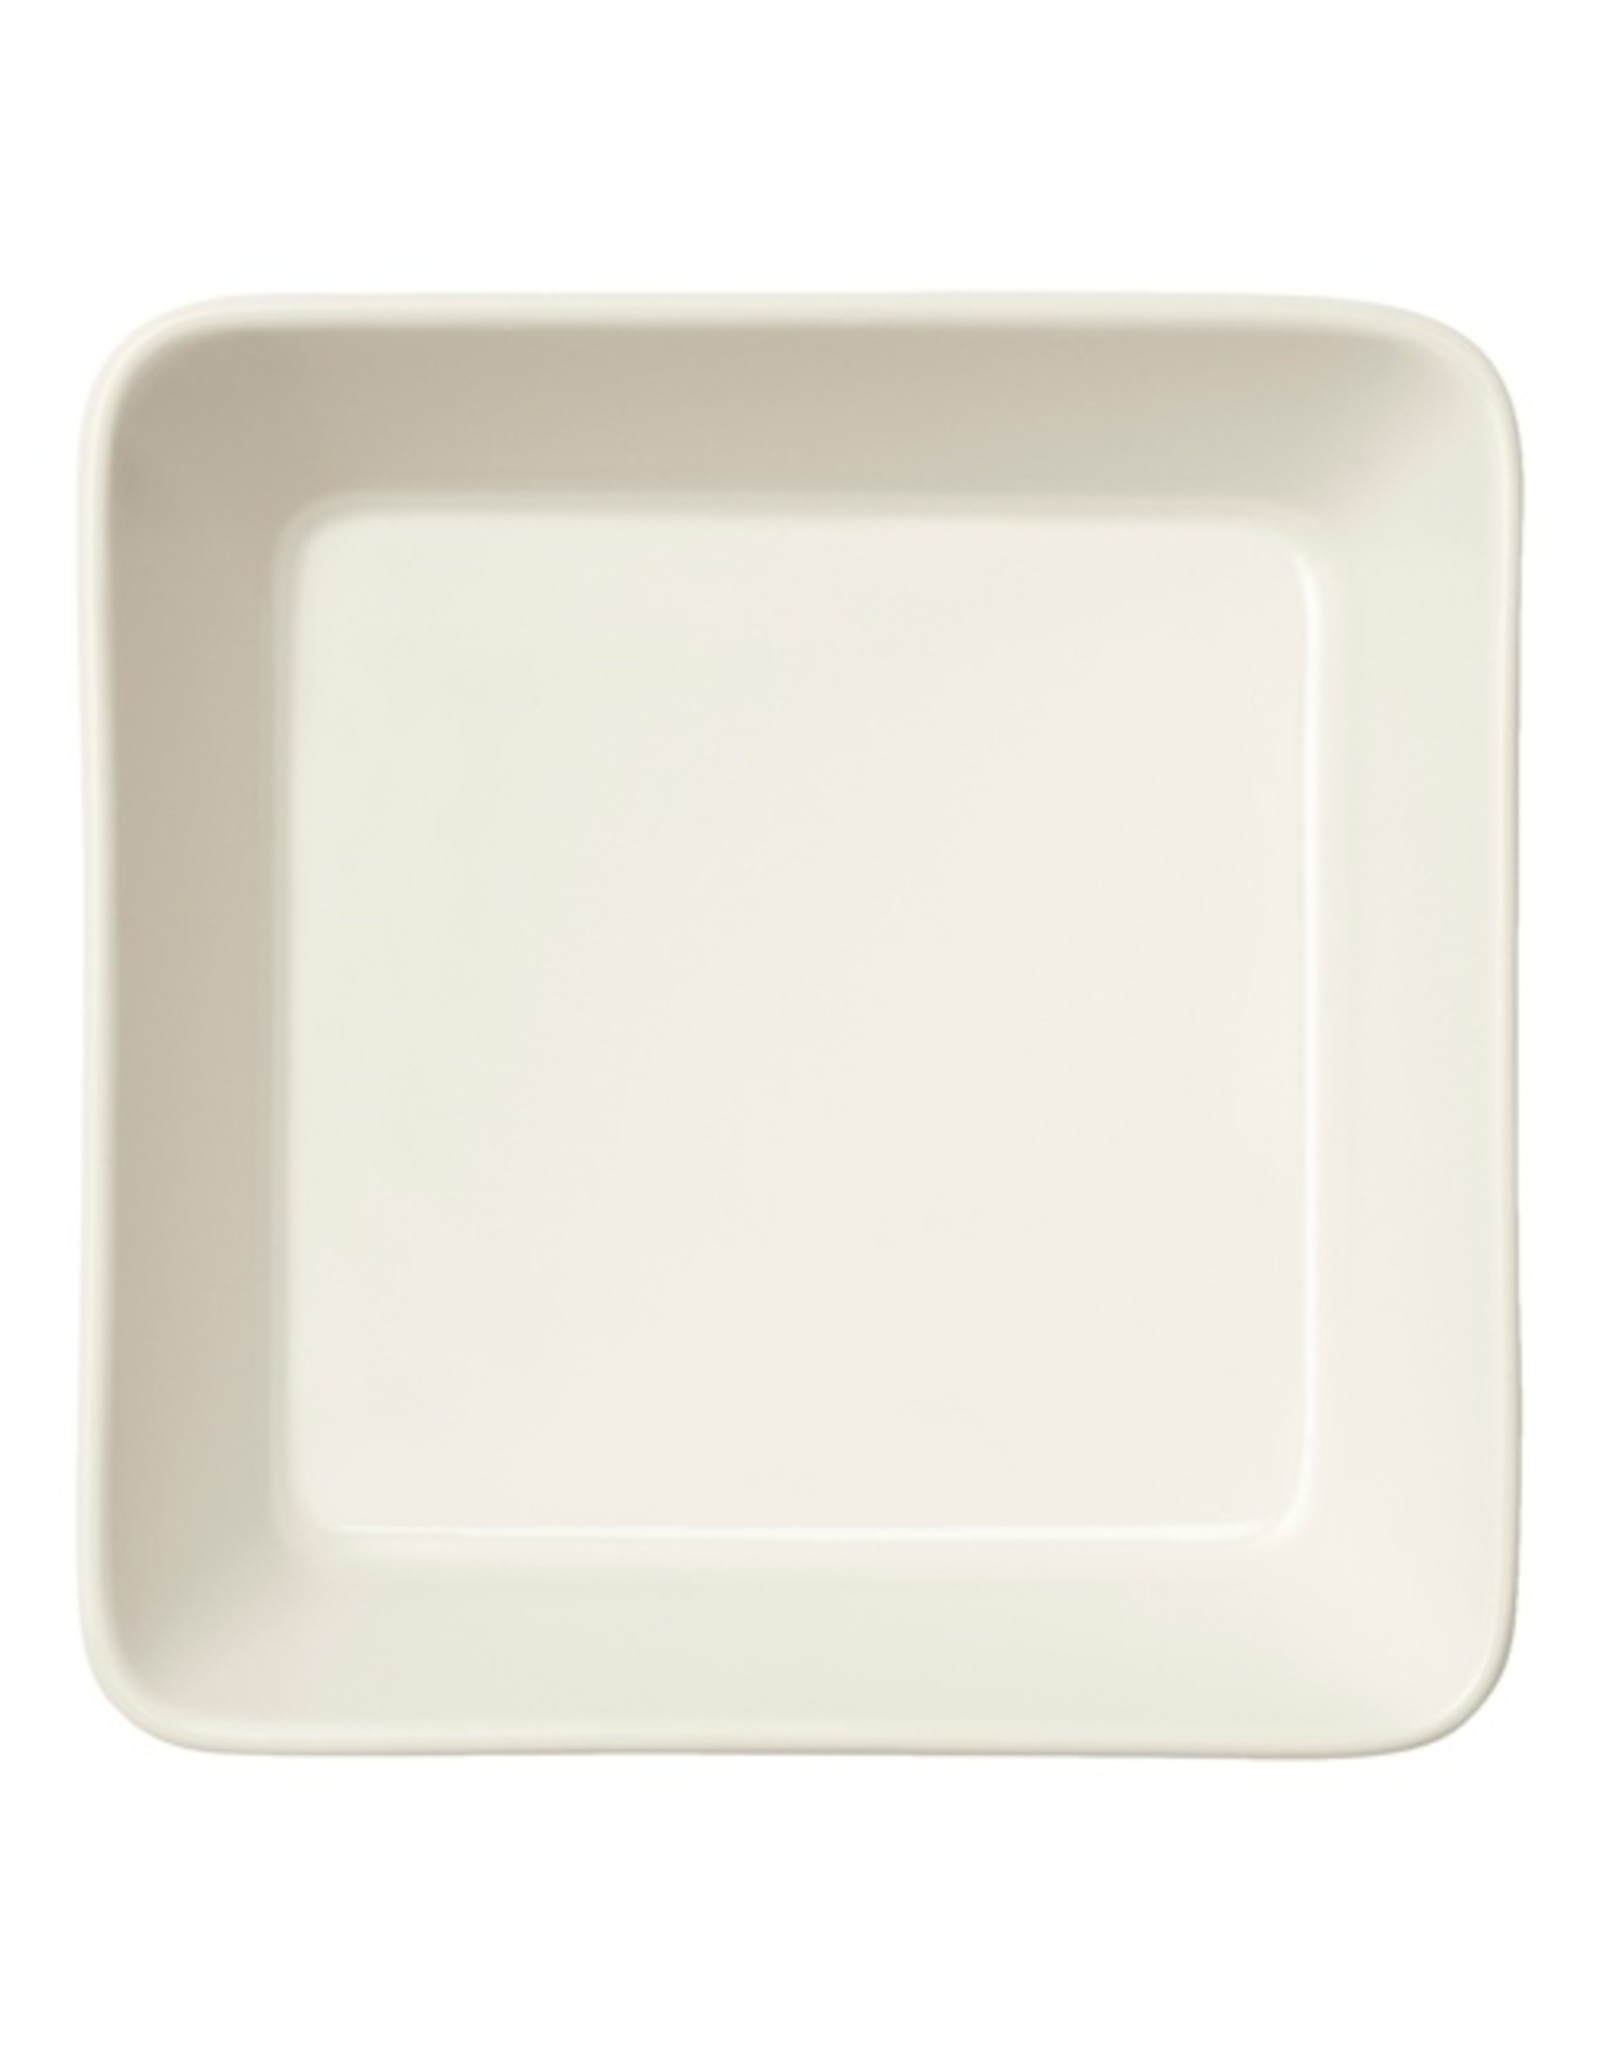 Iittala Iittala-Teema-Scale-12x12-Porcelaine-Blanc